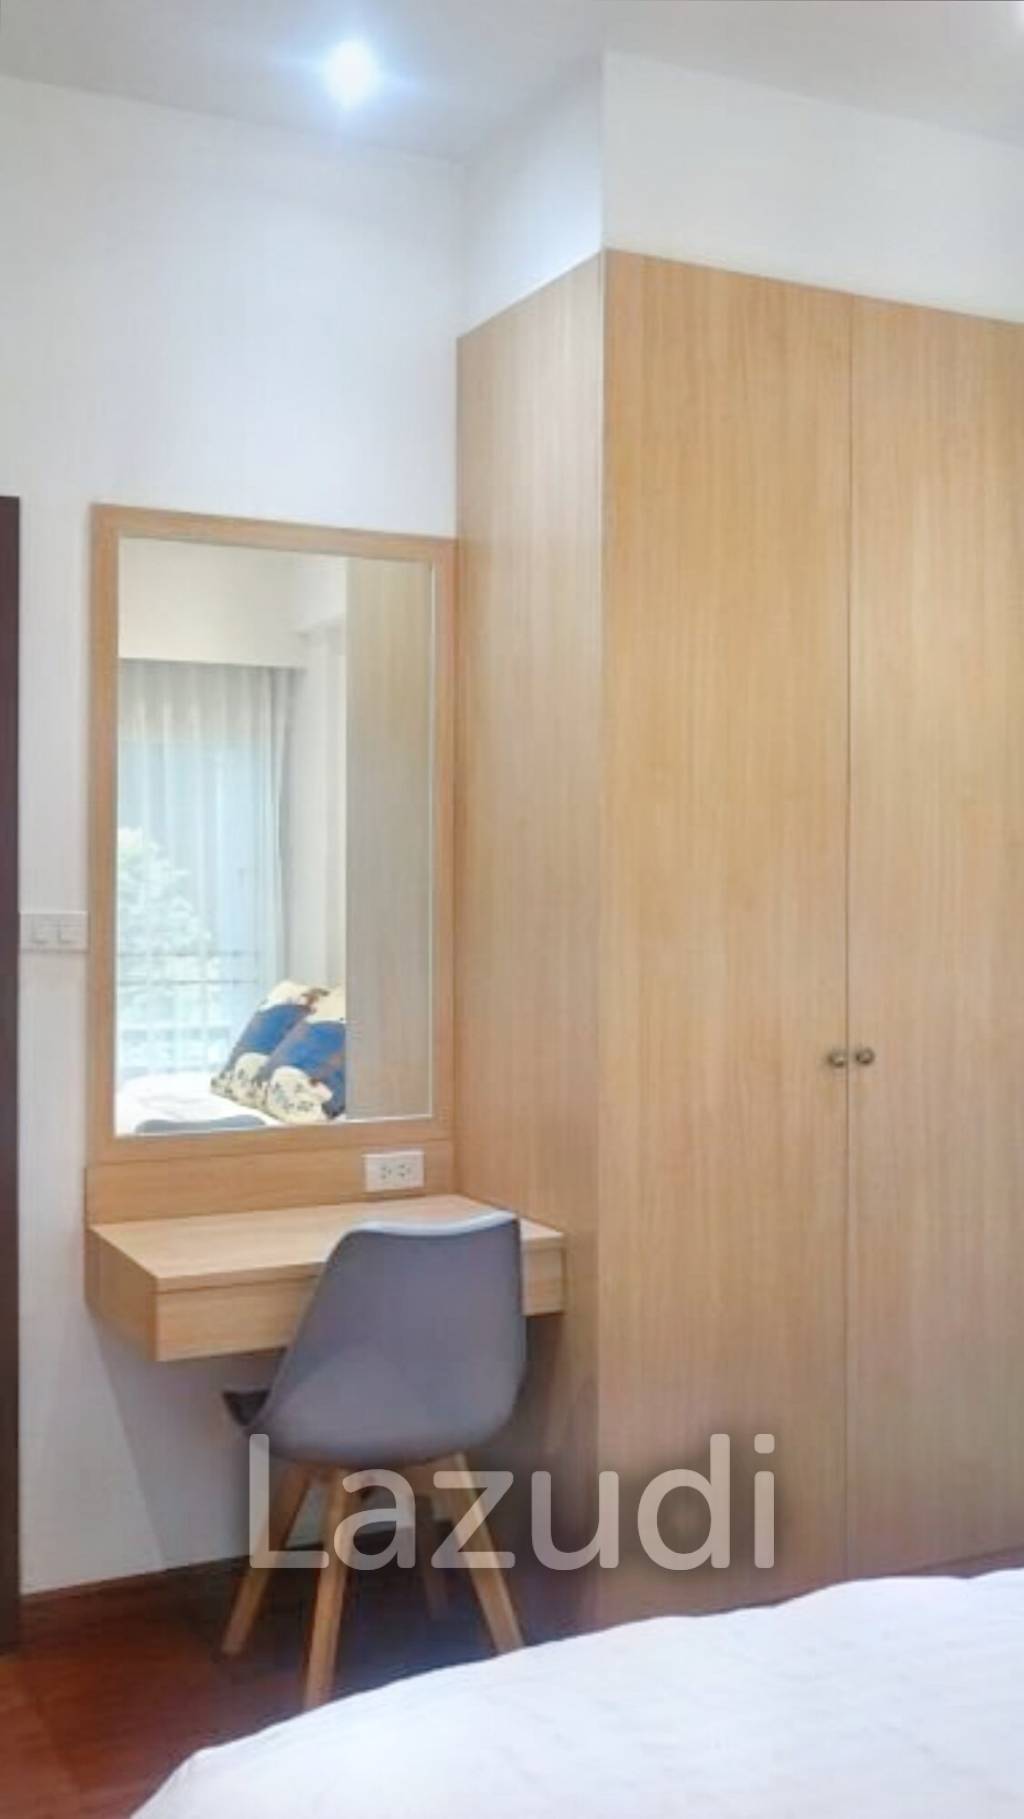 1 Bed 1 Bath 60 SQ.M. Prasanmit Condominium